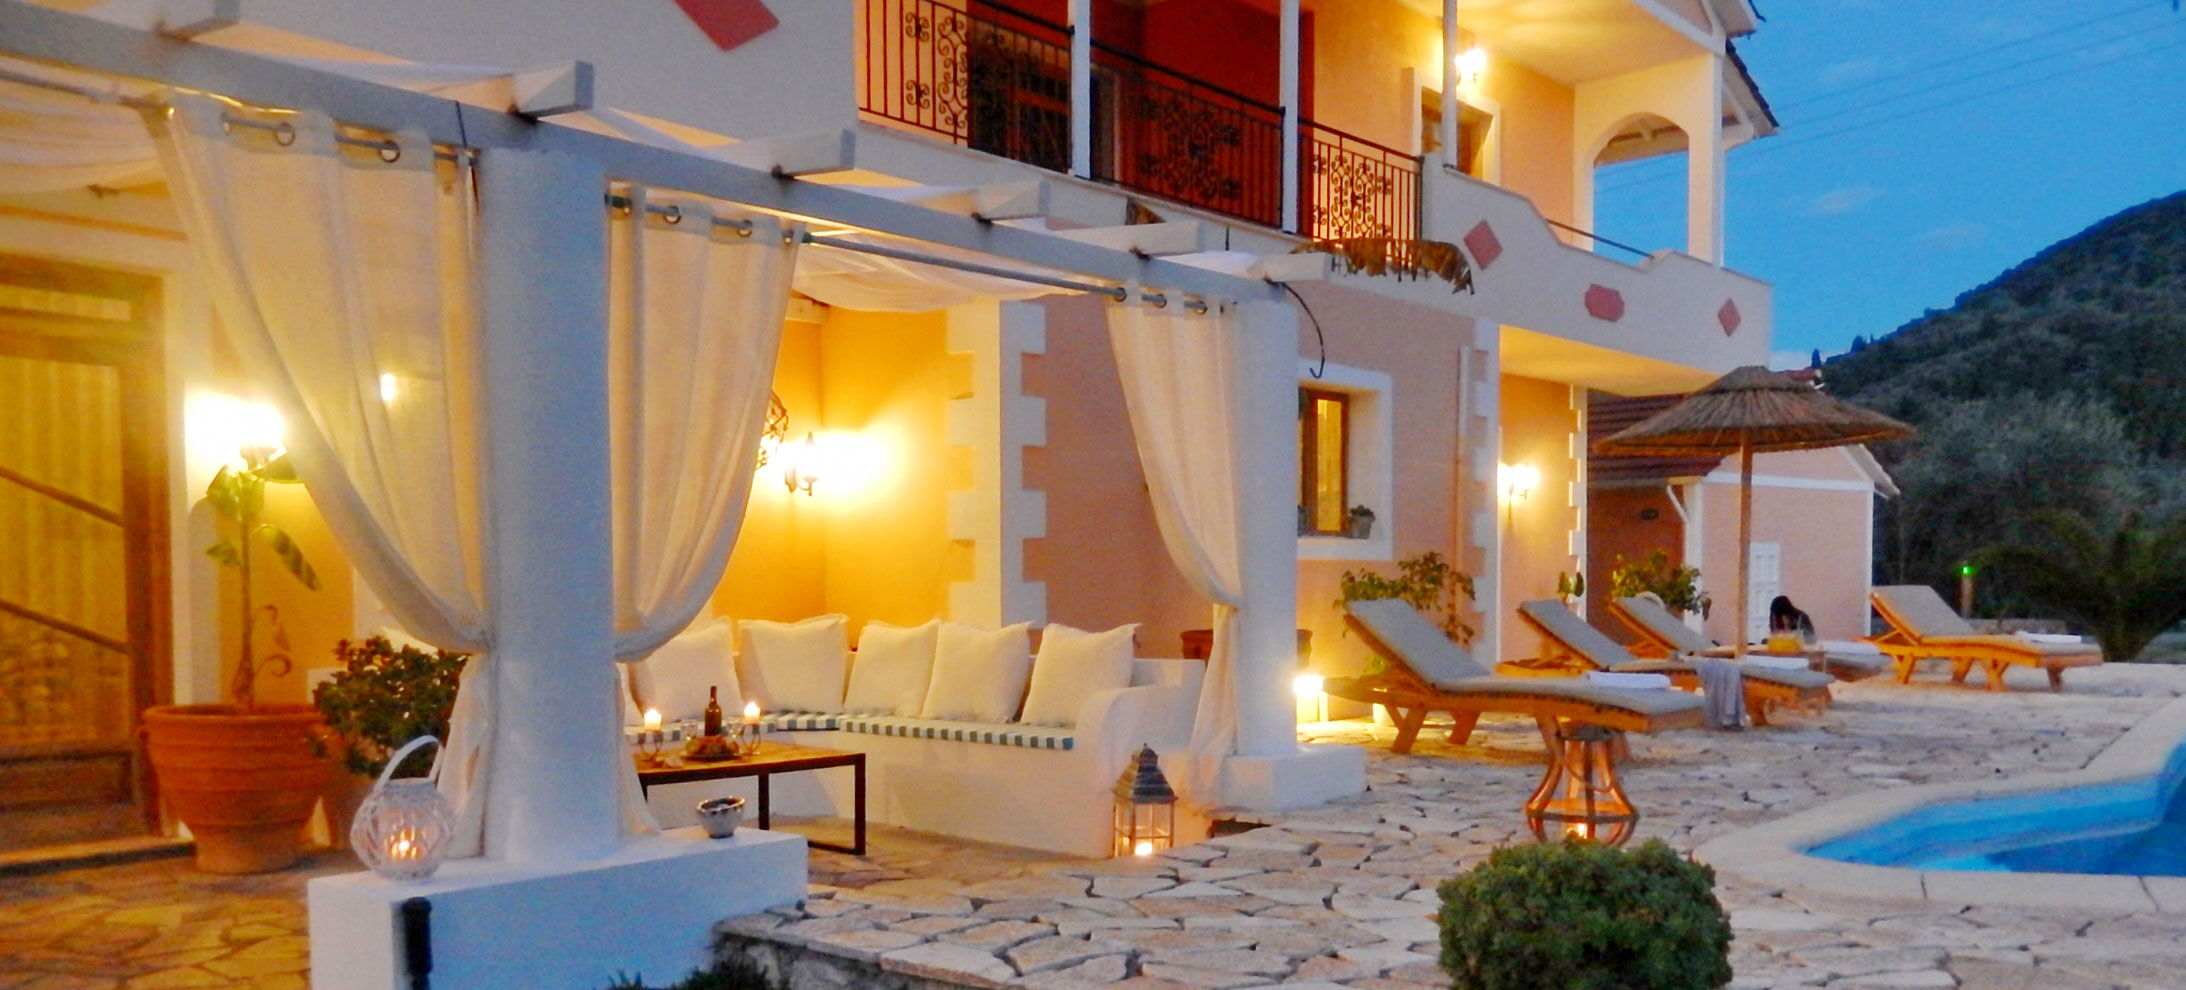 Romantic night at luxery Villa Aliki Vasiliki Greece